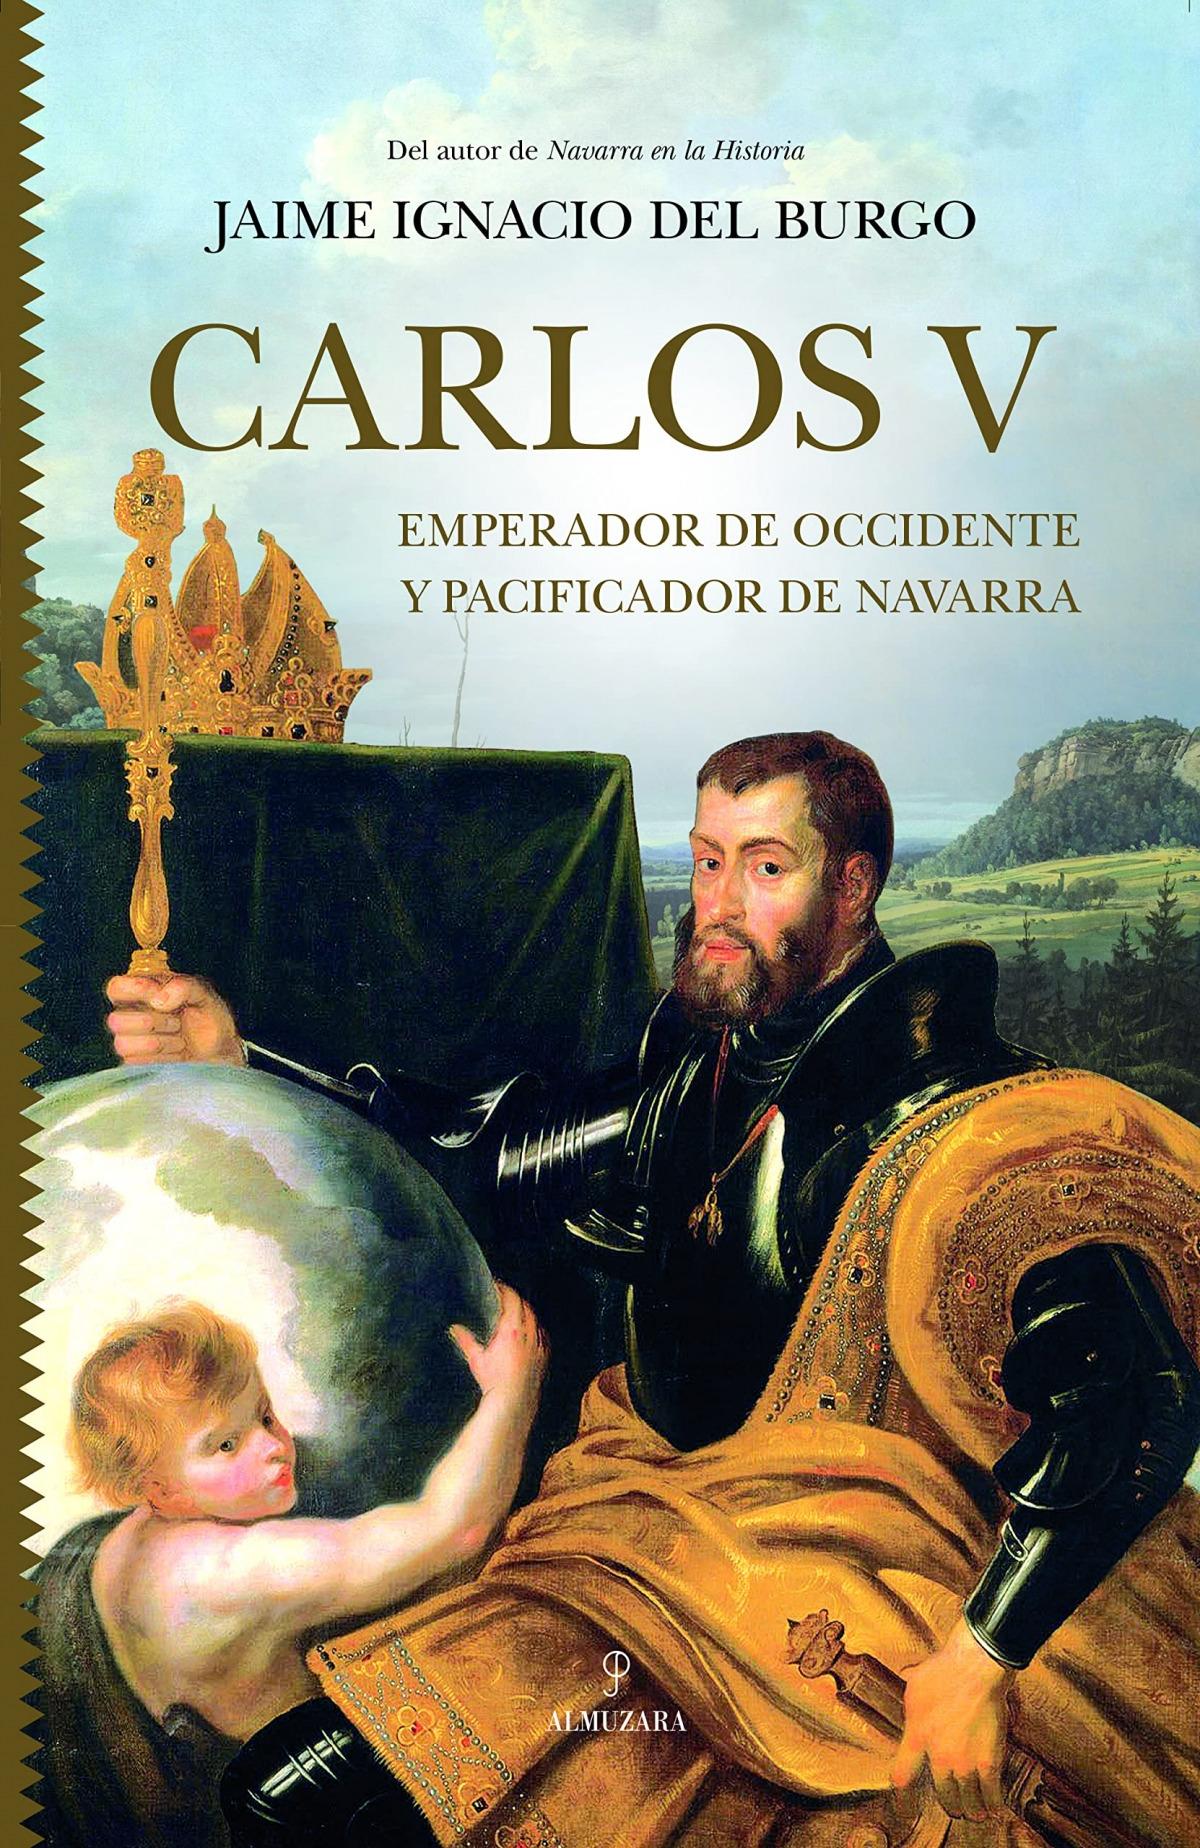 Carlos V "Emperador de Occidente y pacificador de Navarra"